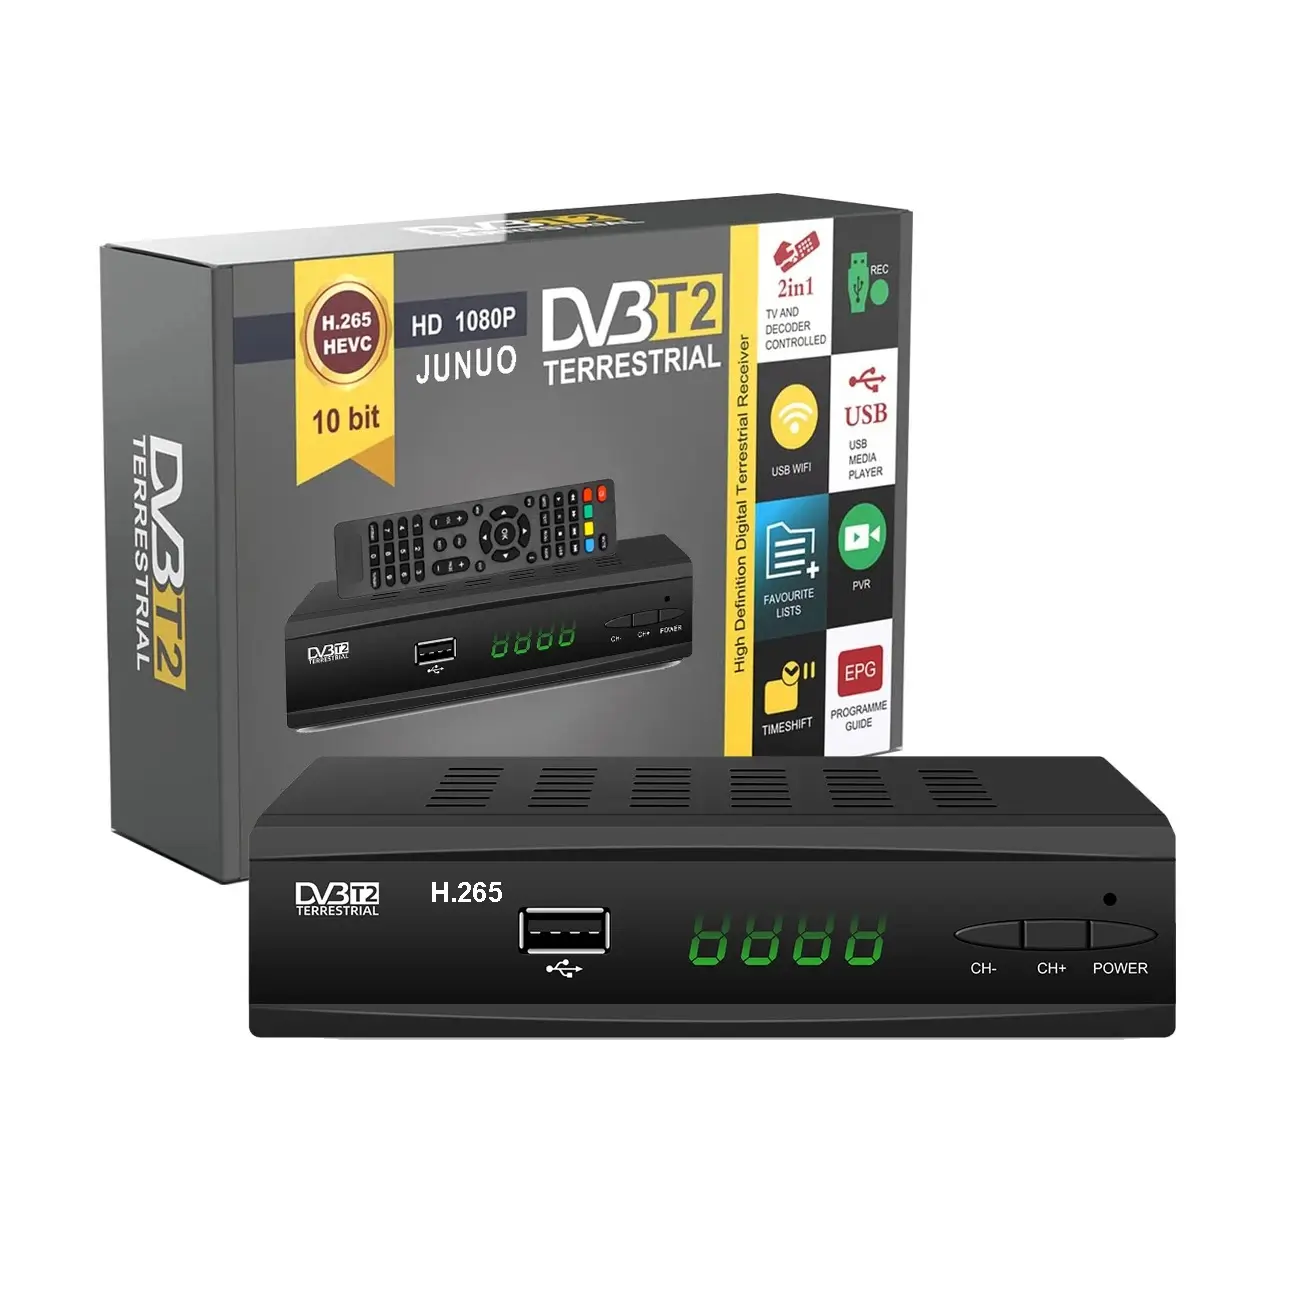 Precio al por mayor DIgital DVB T2 h.265 decodificador compatible con MPEG4 WiFi FTA 1080p decodificador DVB T2 Receptor DVB T2 TV box gratis oem odm